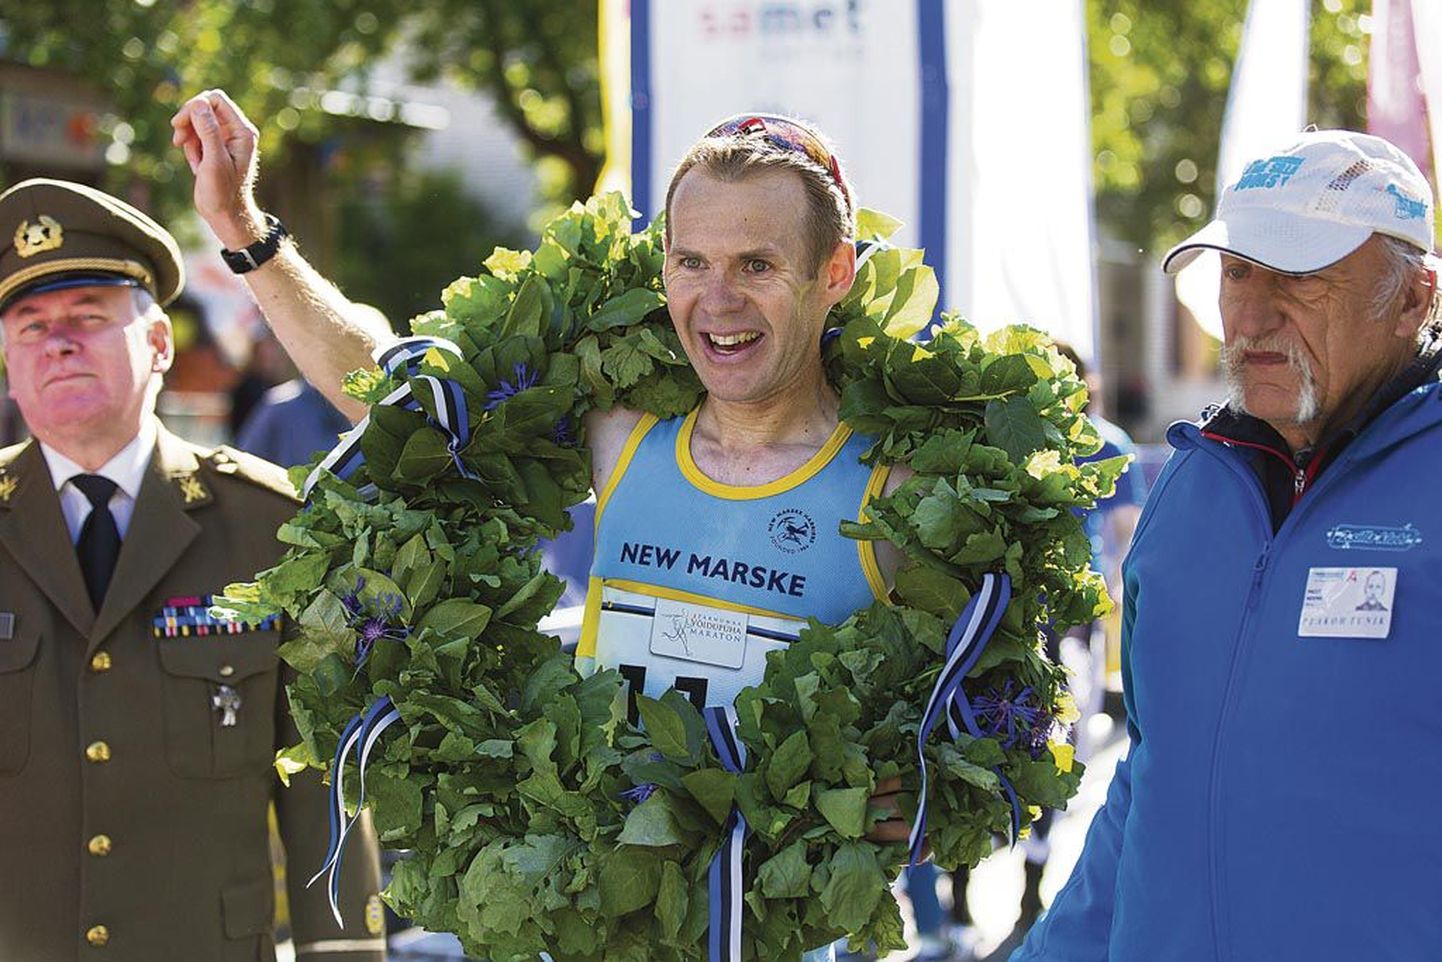 Elu 14. maratoni läbinud Jonathan Rosenbrier jahtis Pärnus isiklikku rekordit, kuid paraku tuli tugeva vastutuule tõttu tippmargist suu puhtaks pühkida. Vaatamata sellele jäi britt jooksuga rahule ja kiitis rajameistreid.